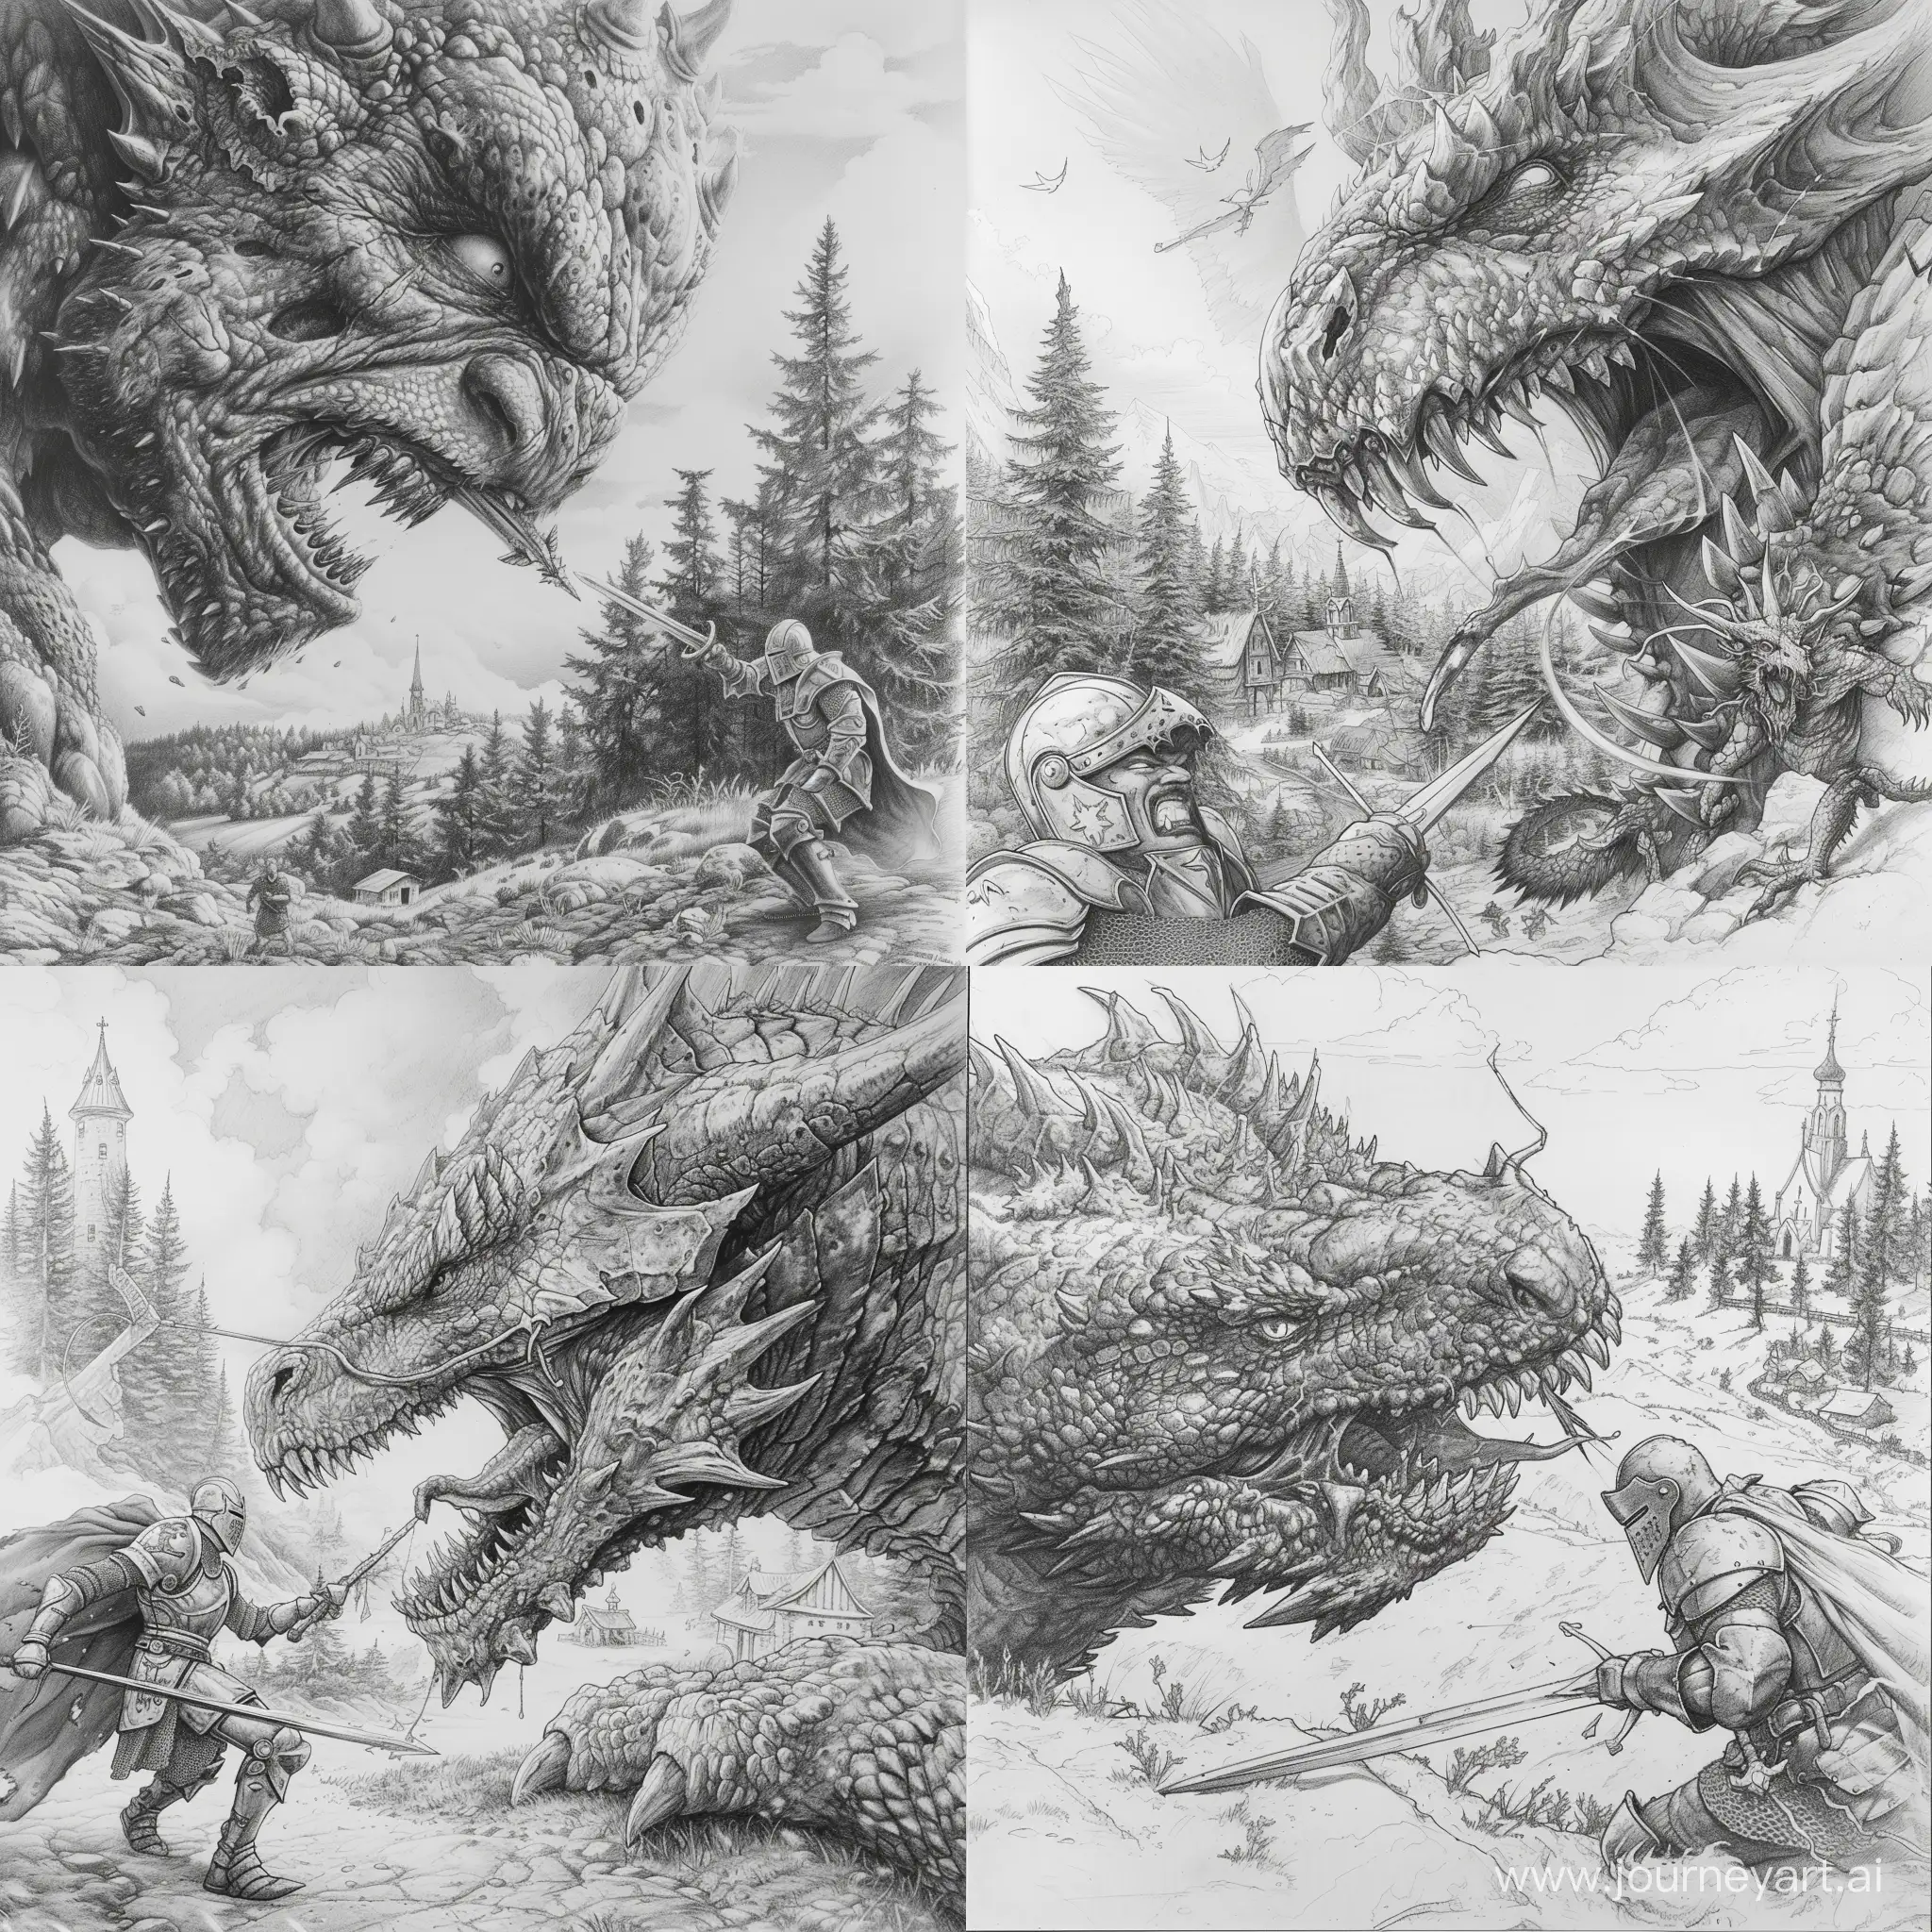 Fierce-Knight-Battling-Giant-Dragon-in-Pine-Forest-Landscape